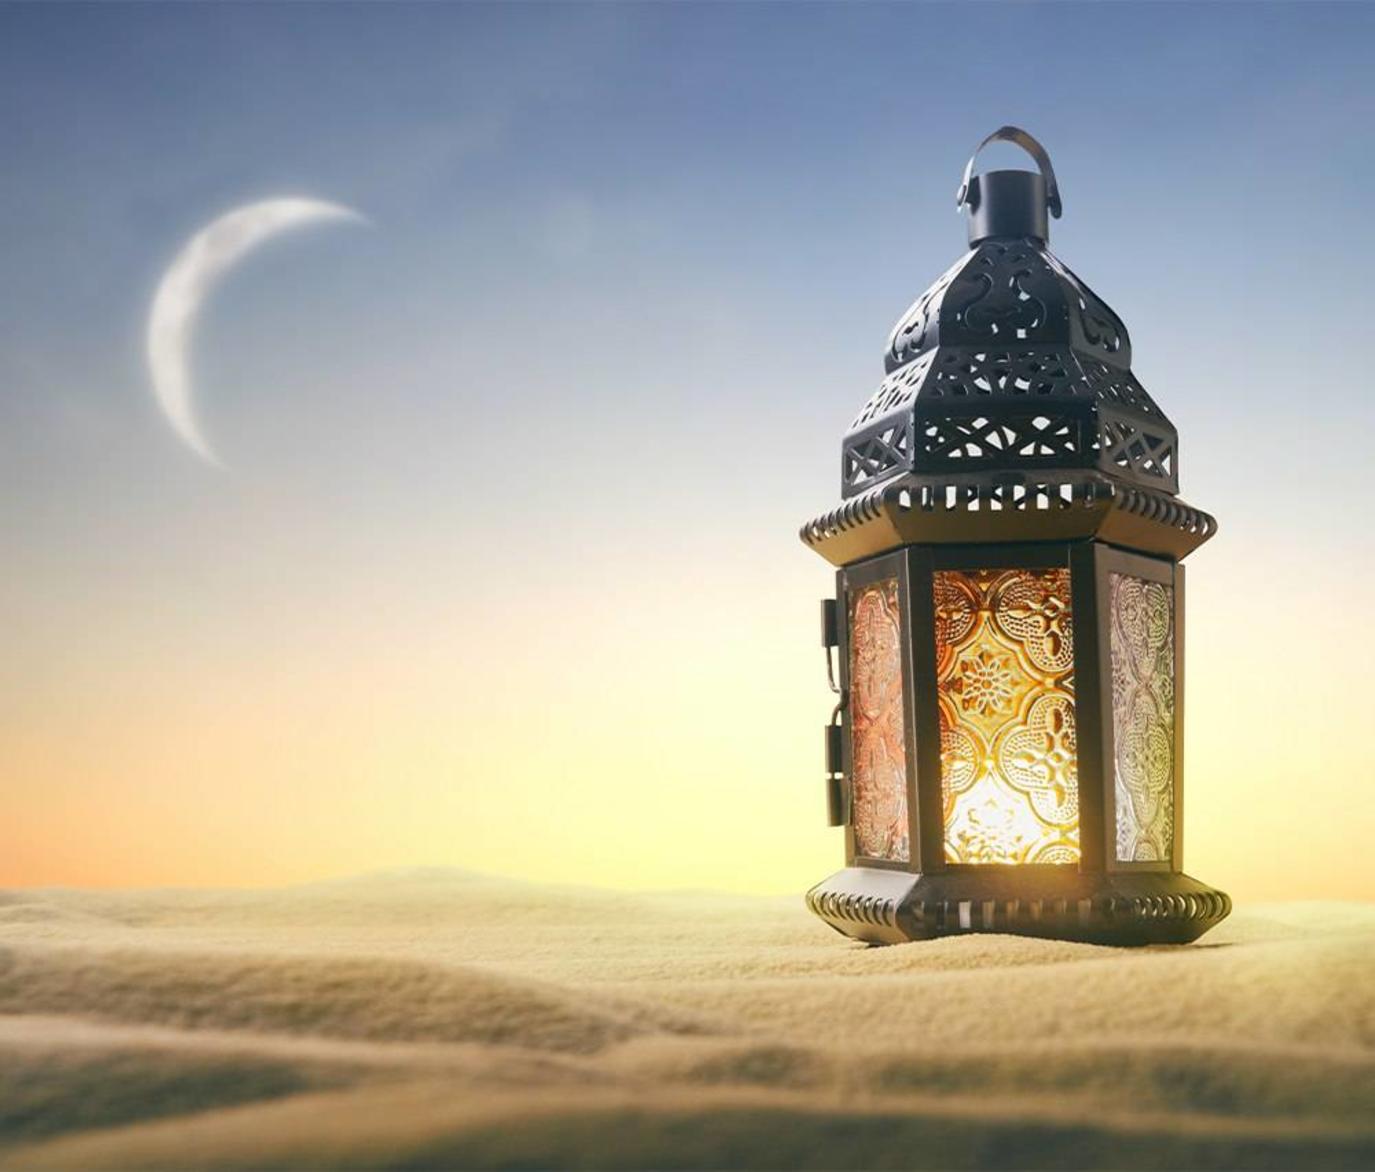 دعاء 7 رمضان || إليكم دعاء اليوم السابع من رمضان 2022 - 1443.. أدعية الرزق في الجمعة الأولى من شهر رمضان